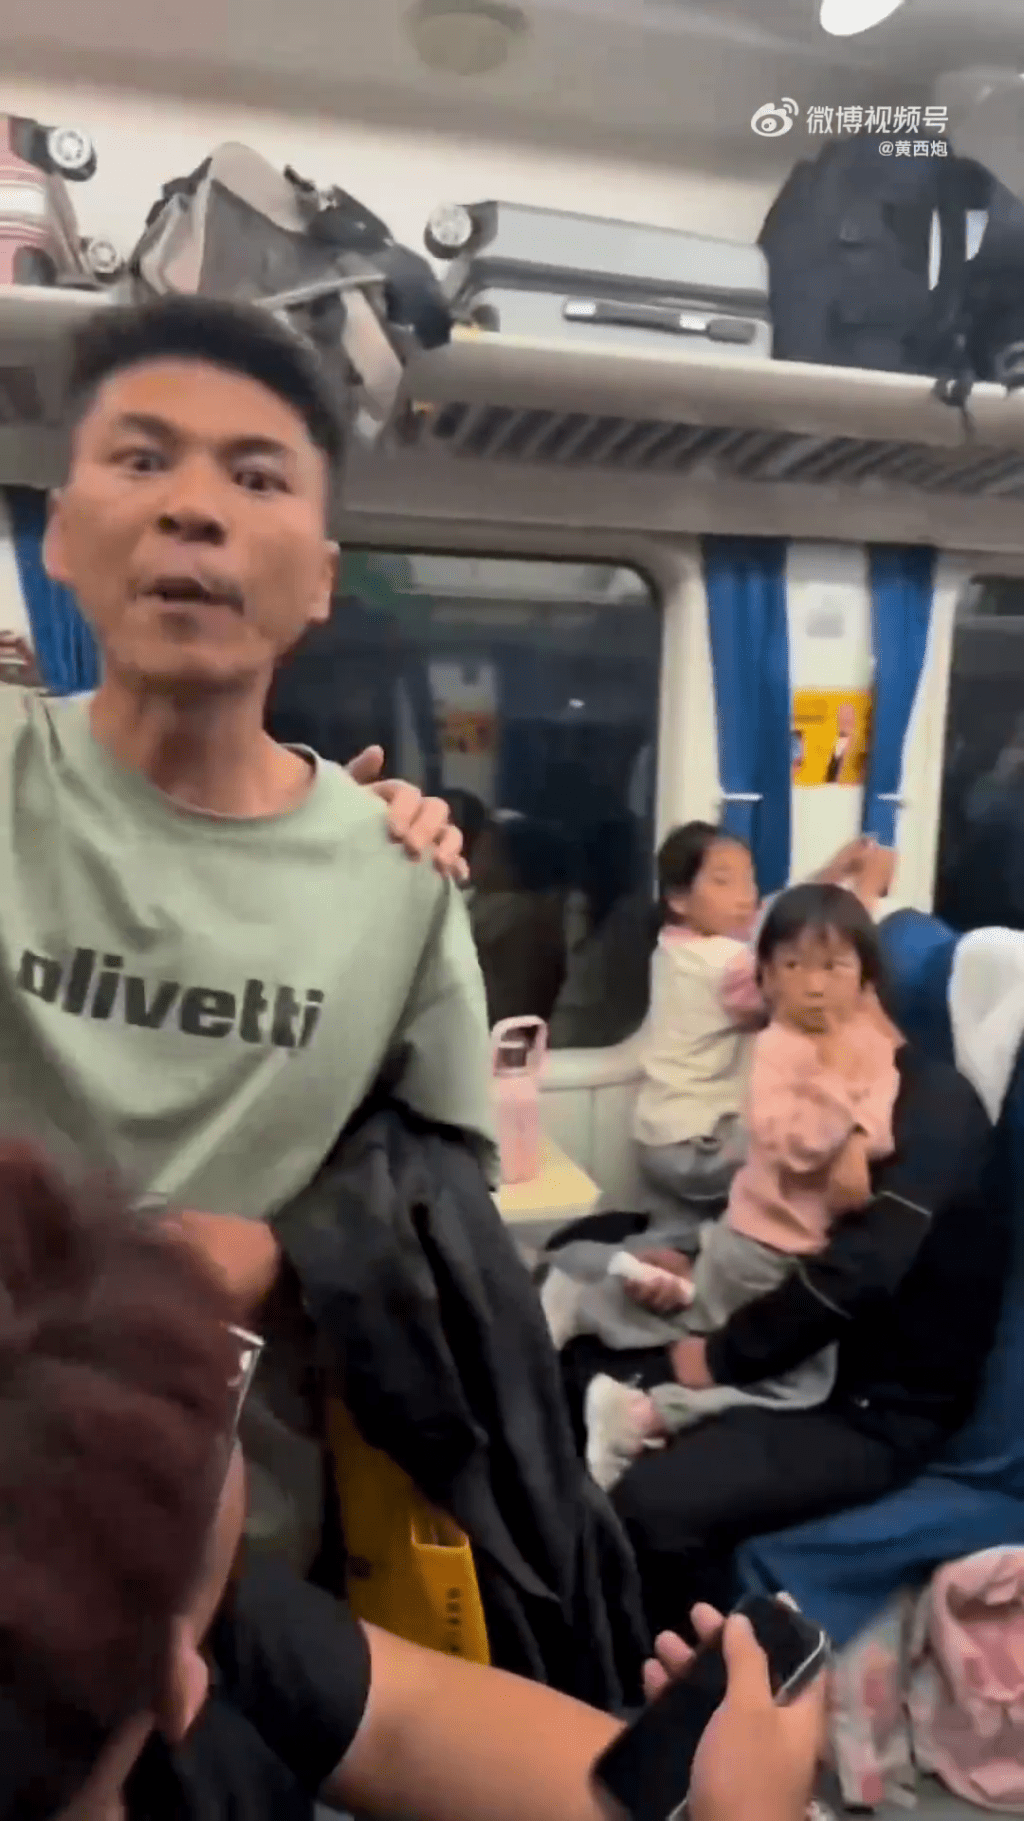 聽了列車員說「山東人窮」，這位年輕男子非常憤怒。